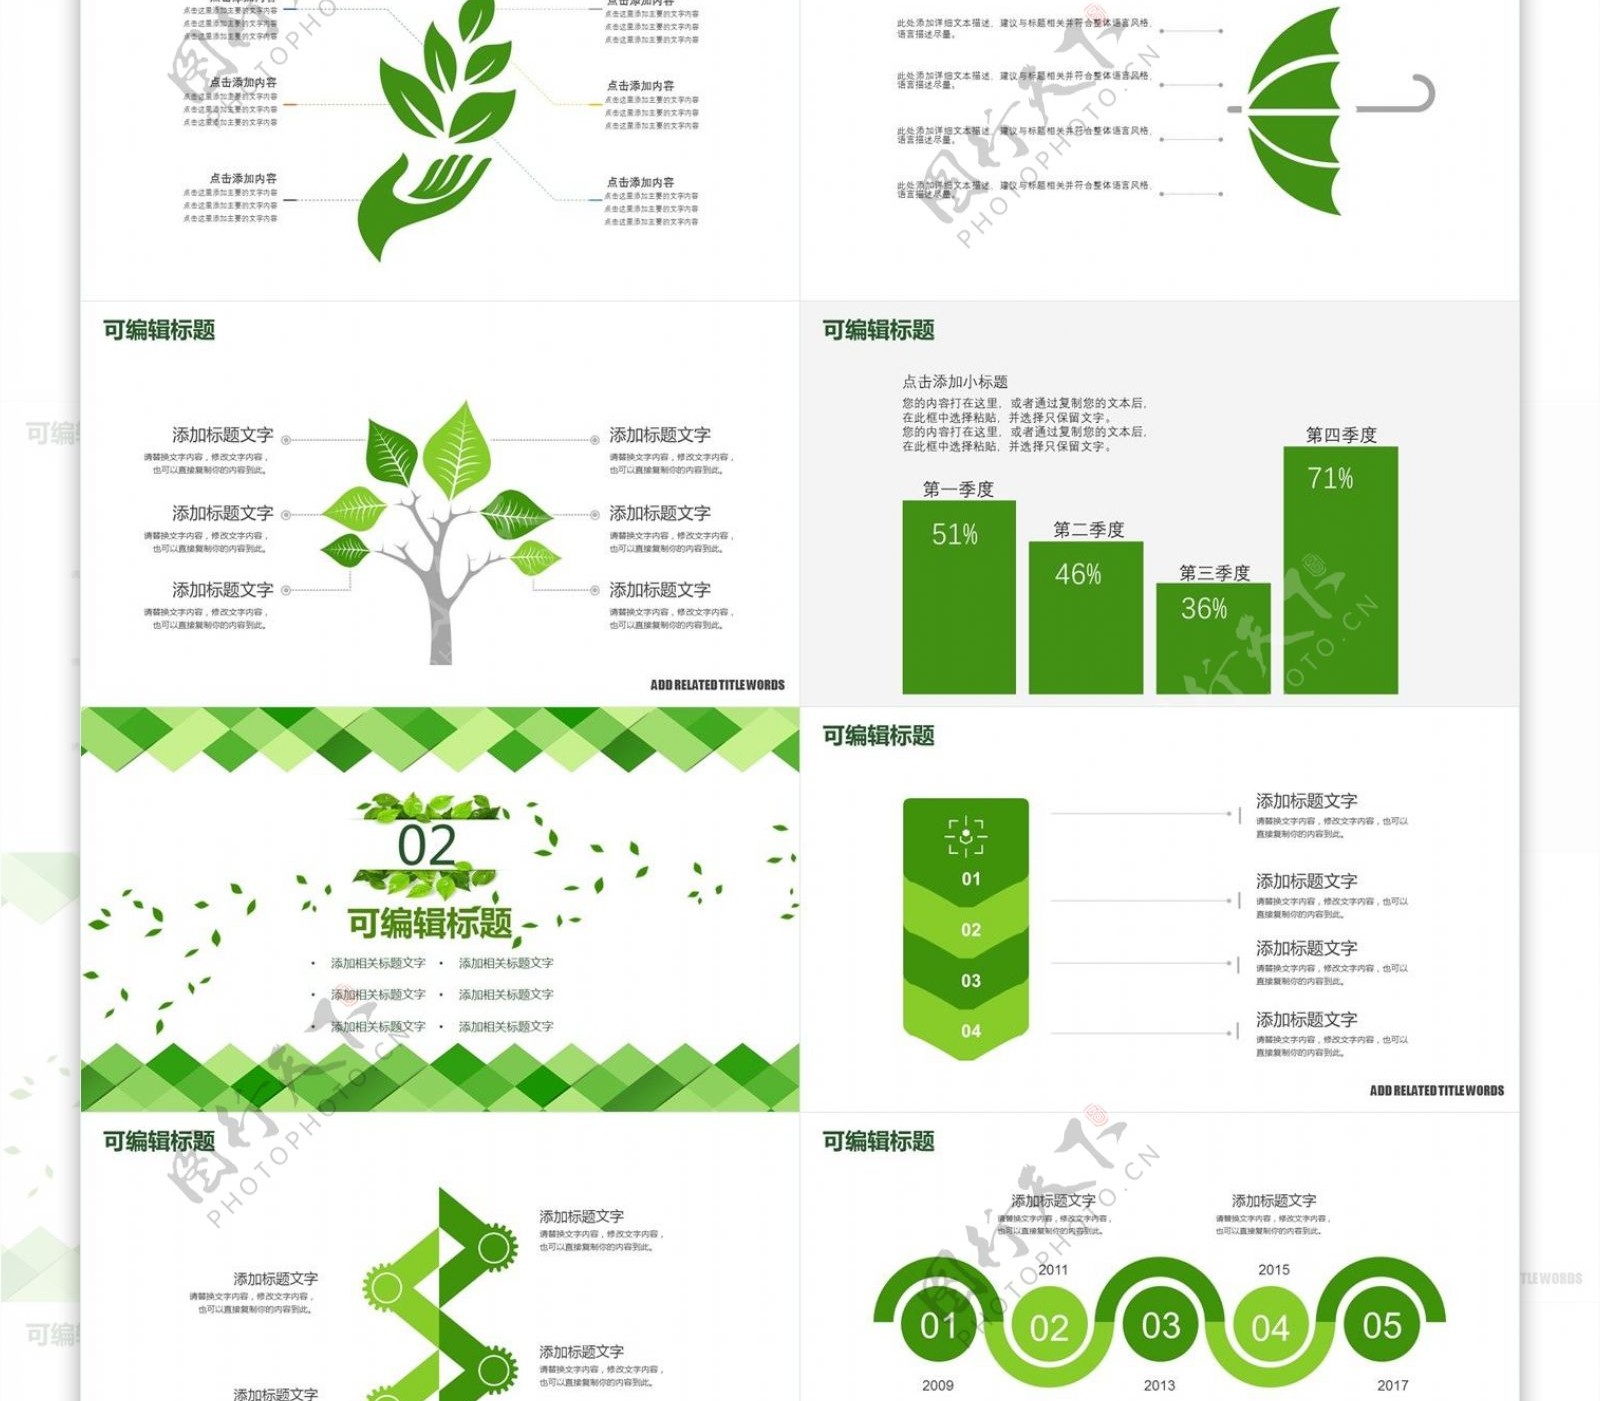 绿色创意无规则图形低碳环保宣传PPT模板